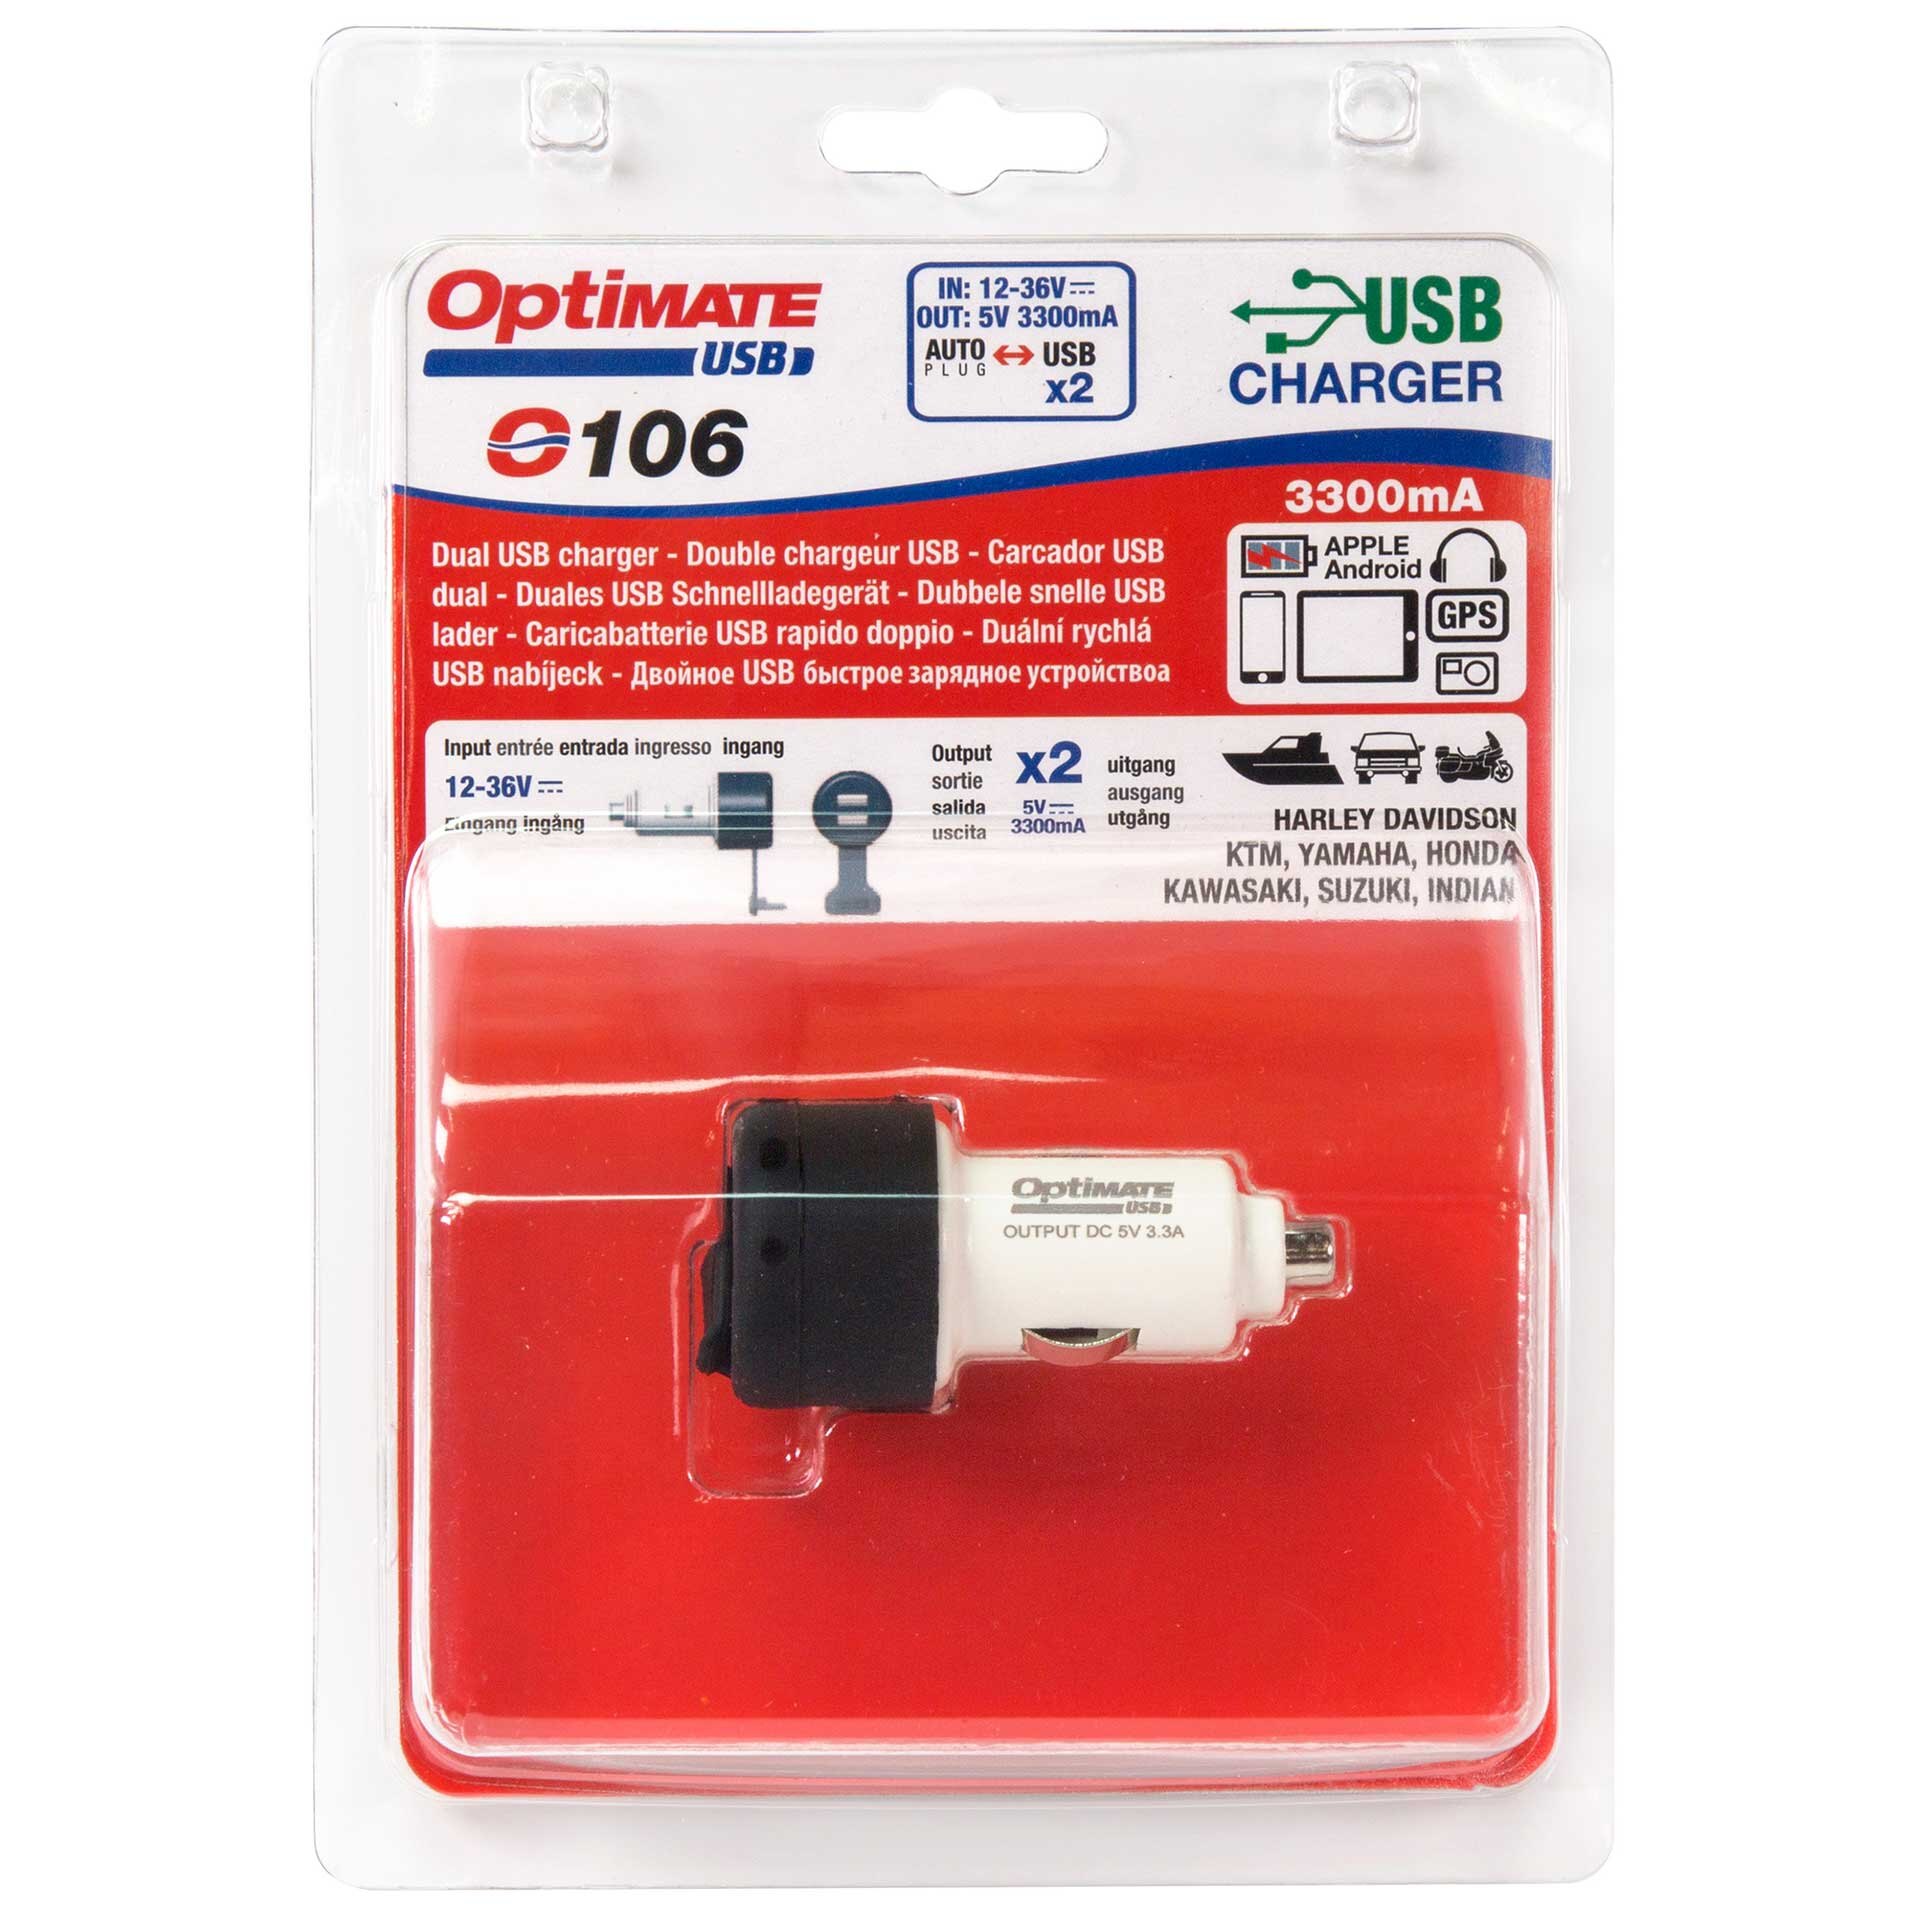 OptiMATE USB Charger O 106